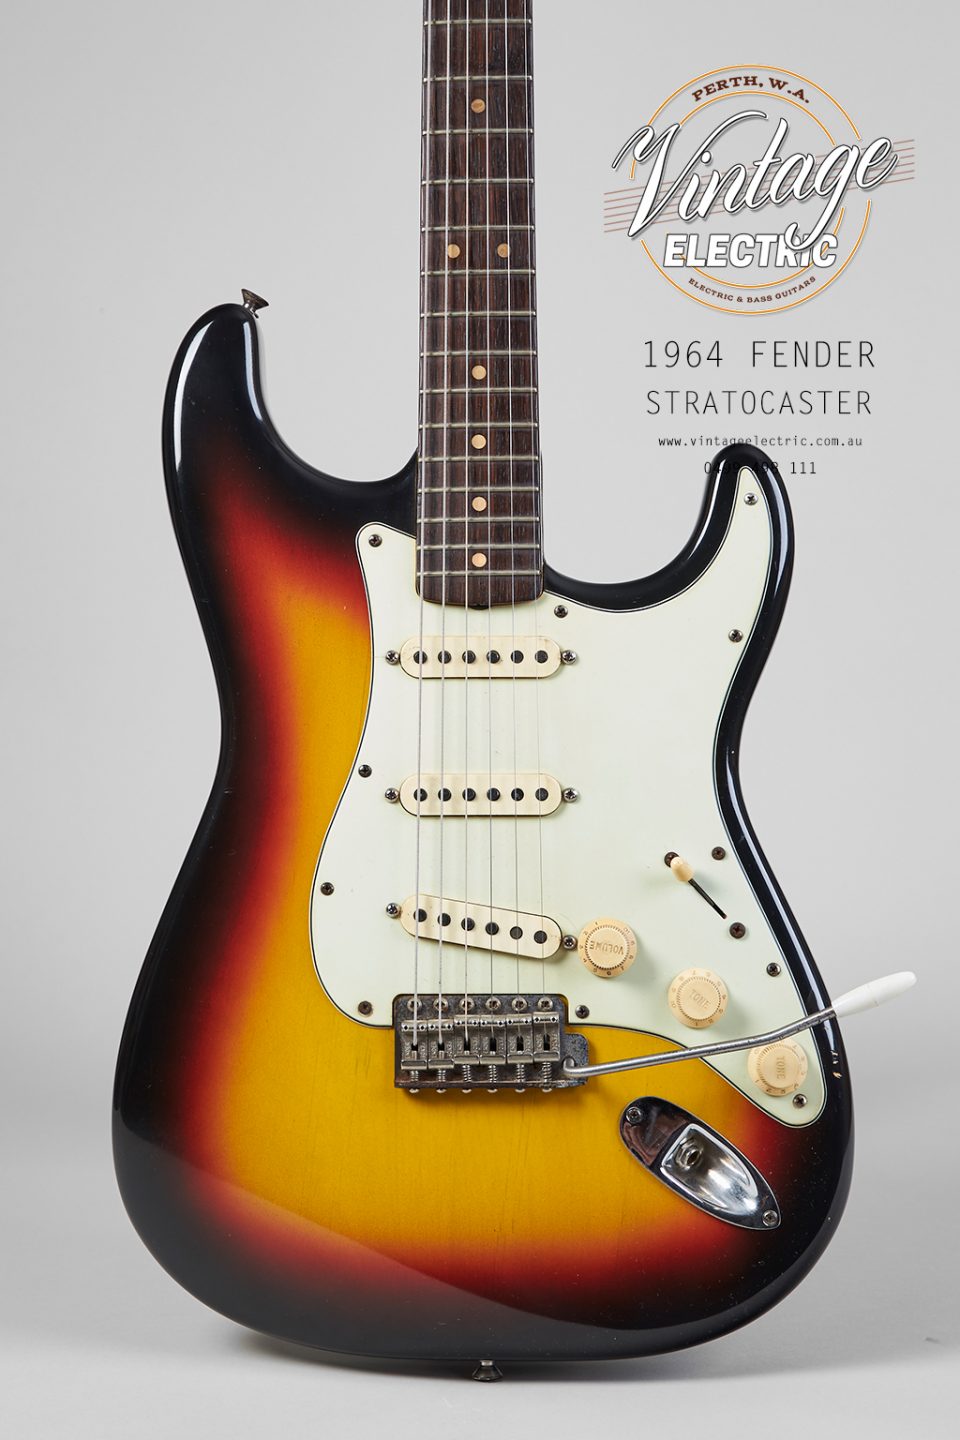 1964 Fender Stratocaster Body